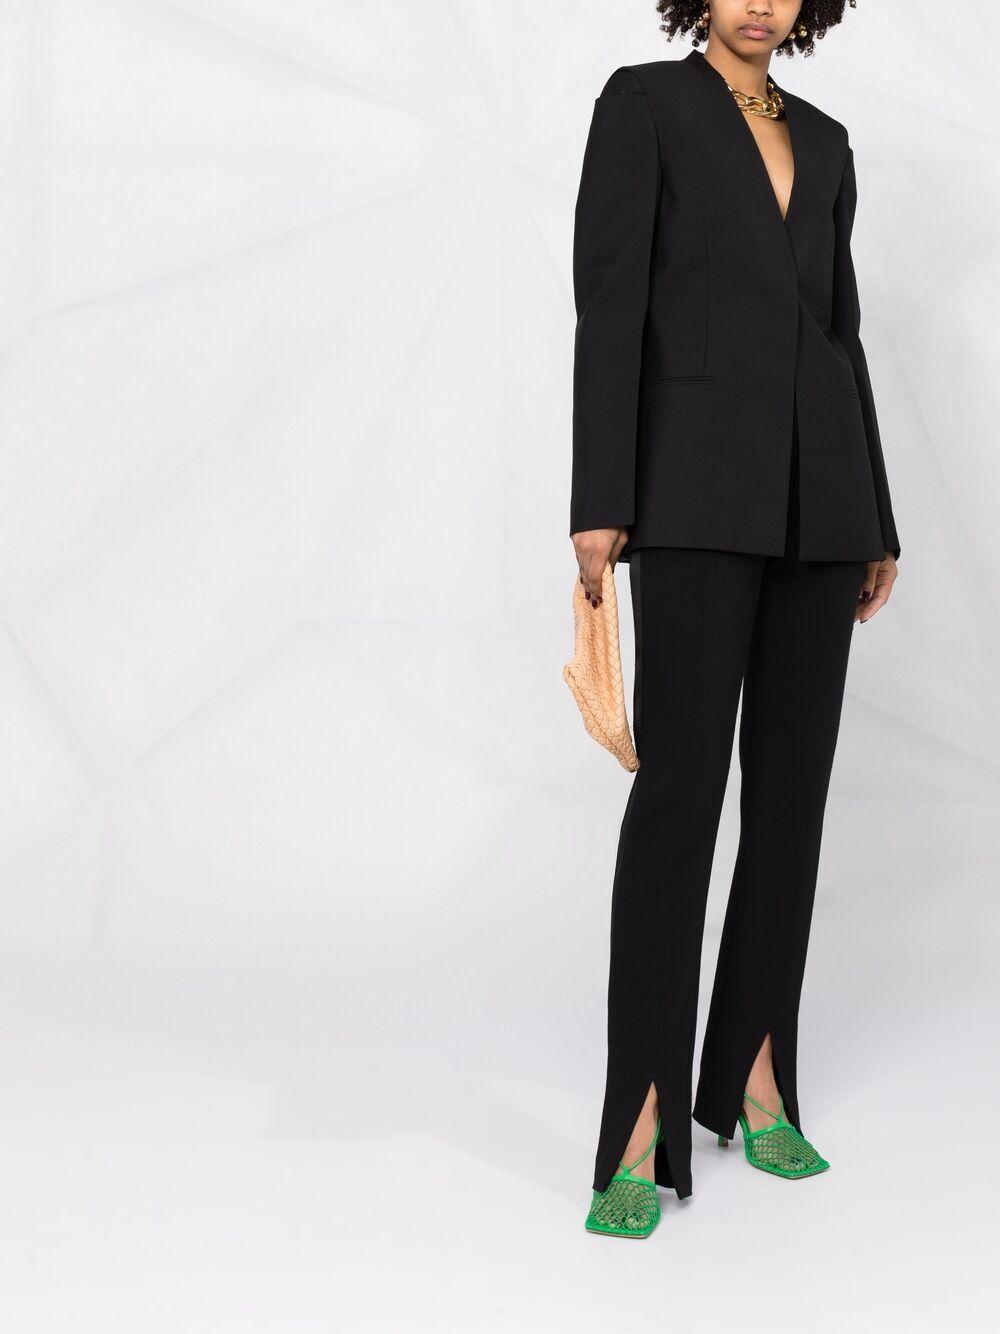 Givenchy Wolle Einreihige Jacke ohne Kragen in Schwarz - Sparen Sie 21% -  Lyst